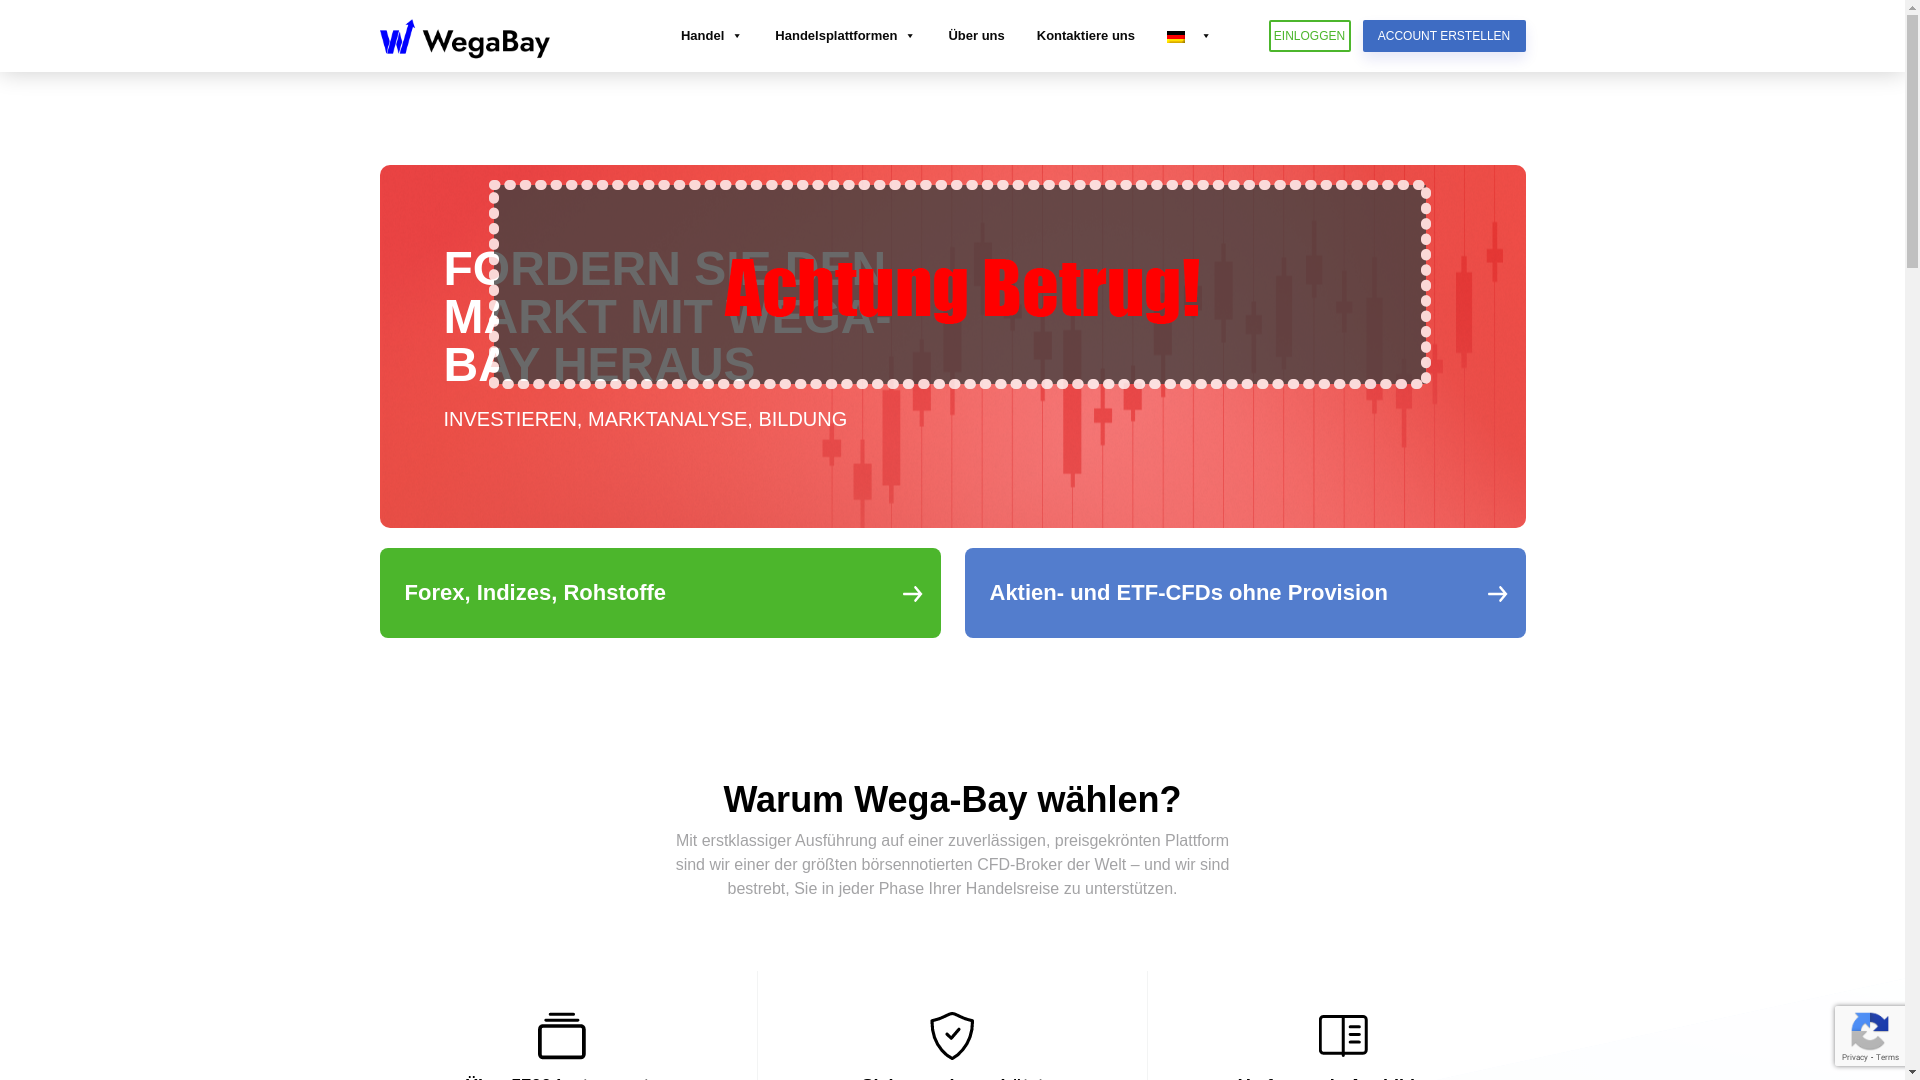 wega-bay.com